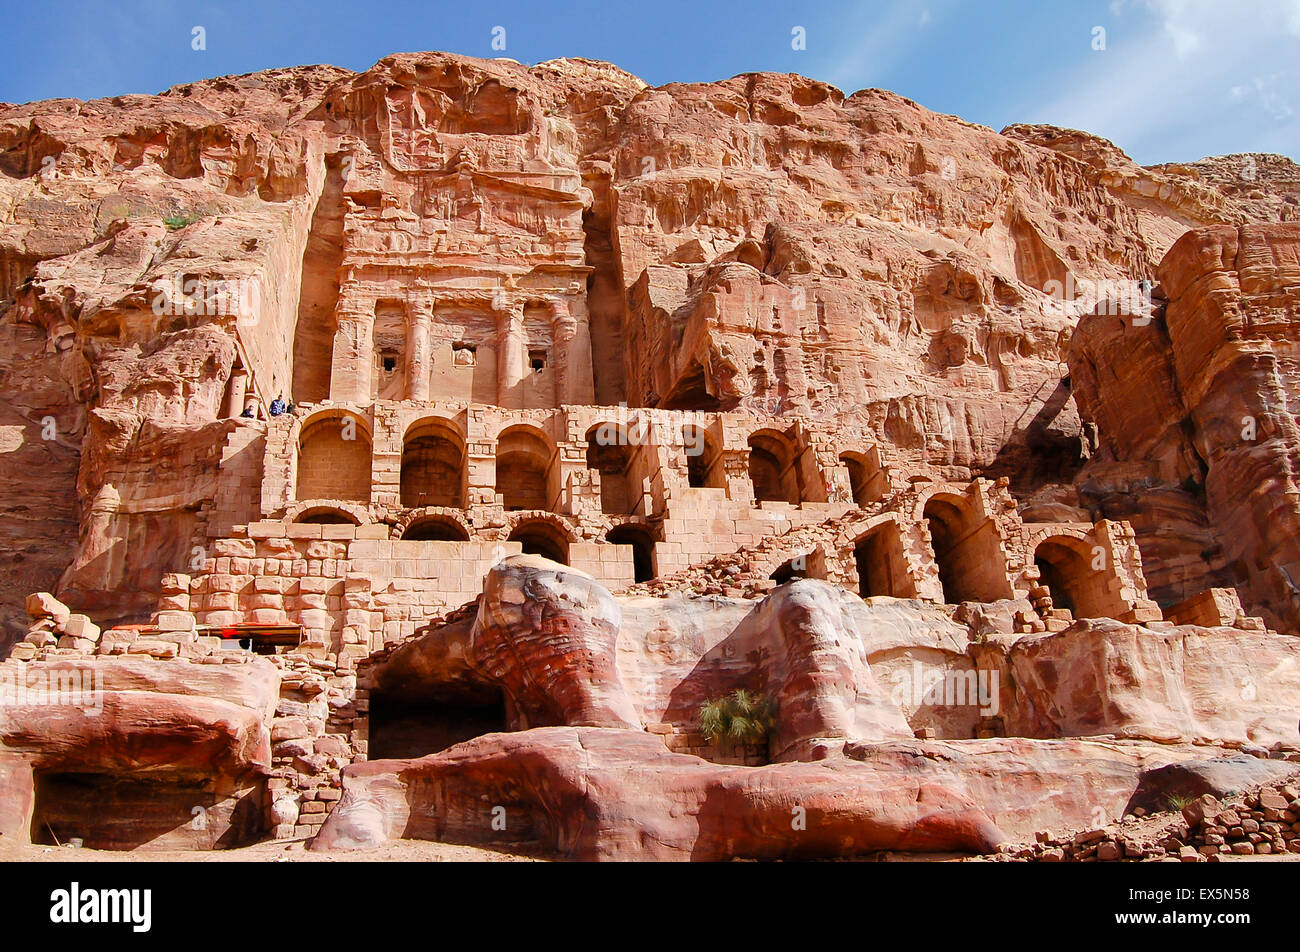 Carved Buildings in Sandstone - Petra - Jordan Stock Photo